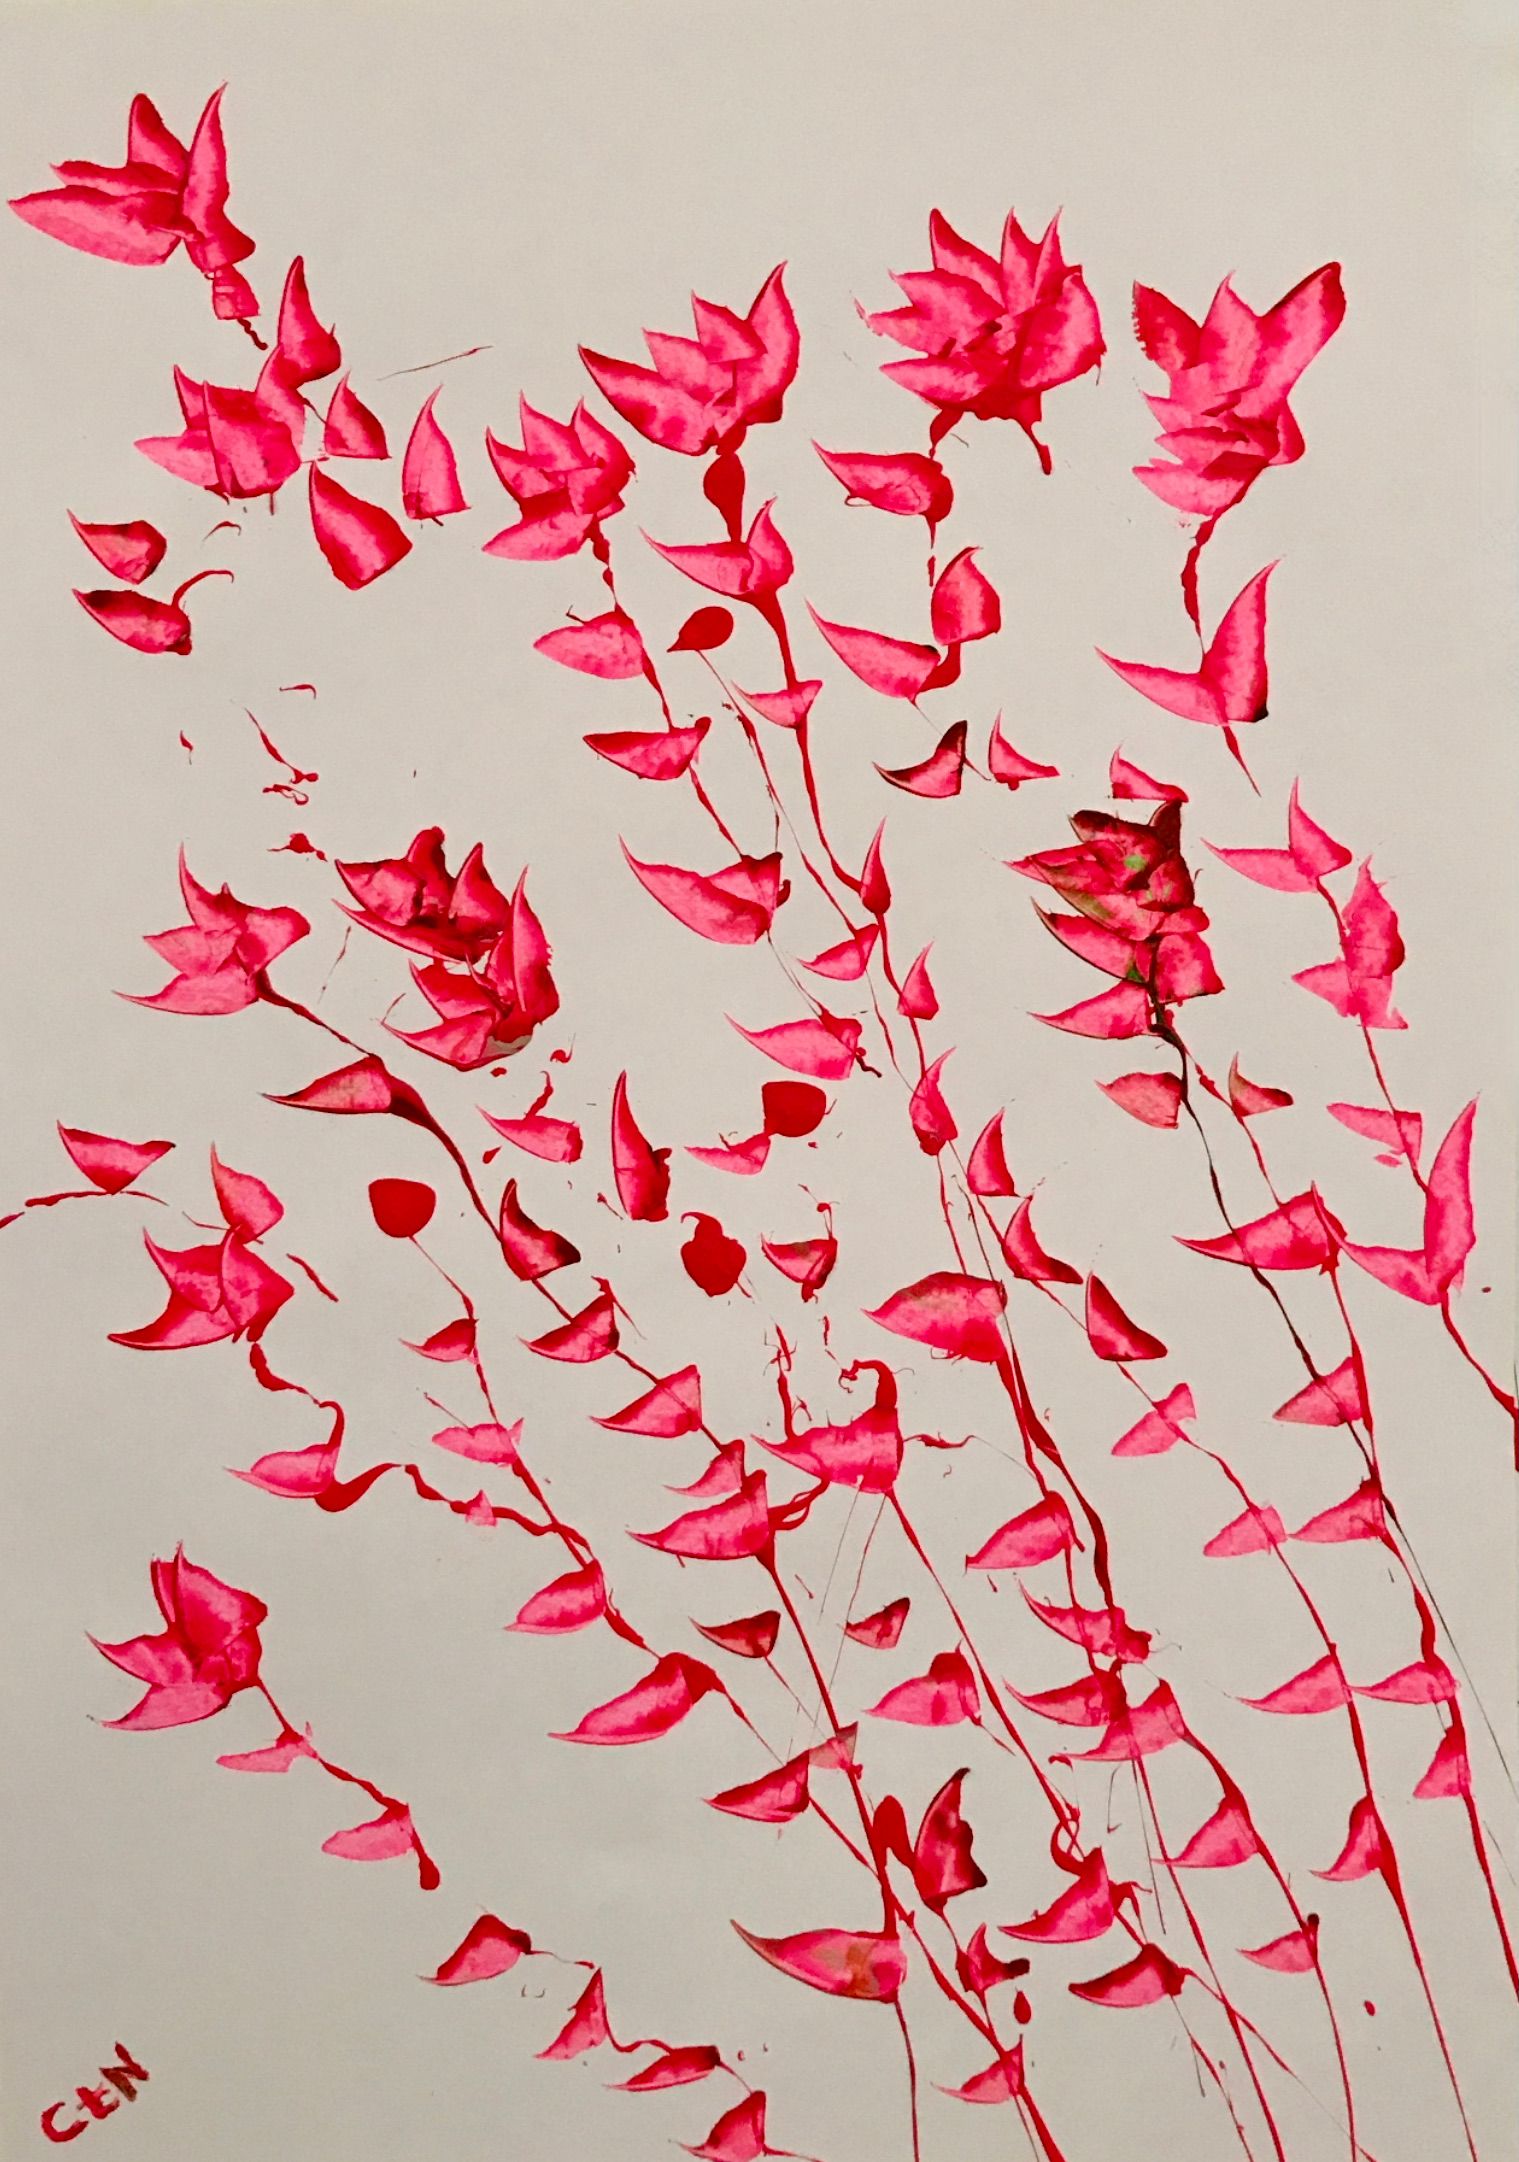 "Bitte kein Pink" der Künstlerin Caroline te Neues, ist eine figurative abstrakte Malerei  zu erwerben bei der online Galerie www.galleristic.com 